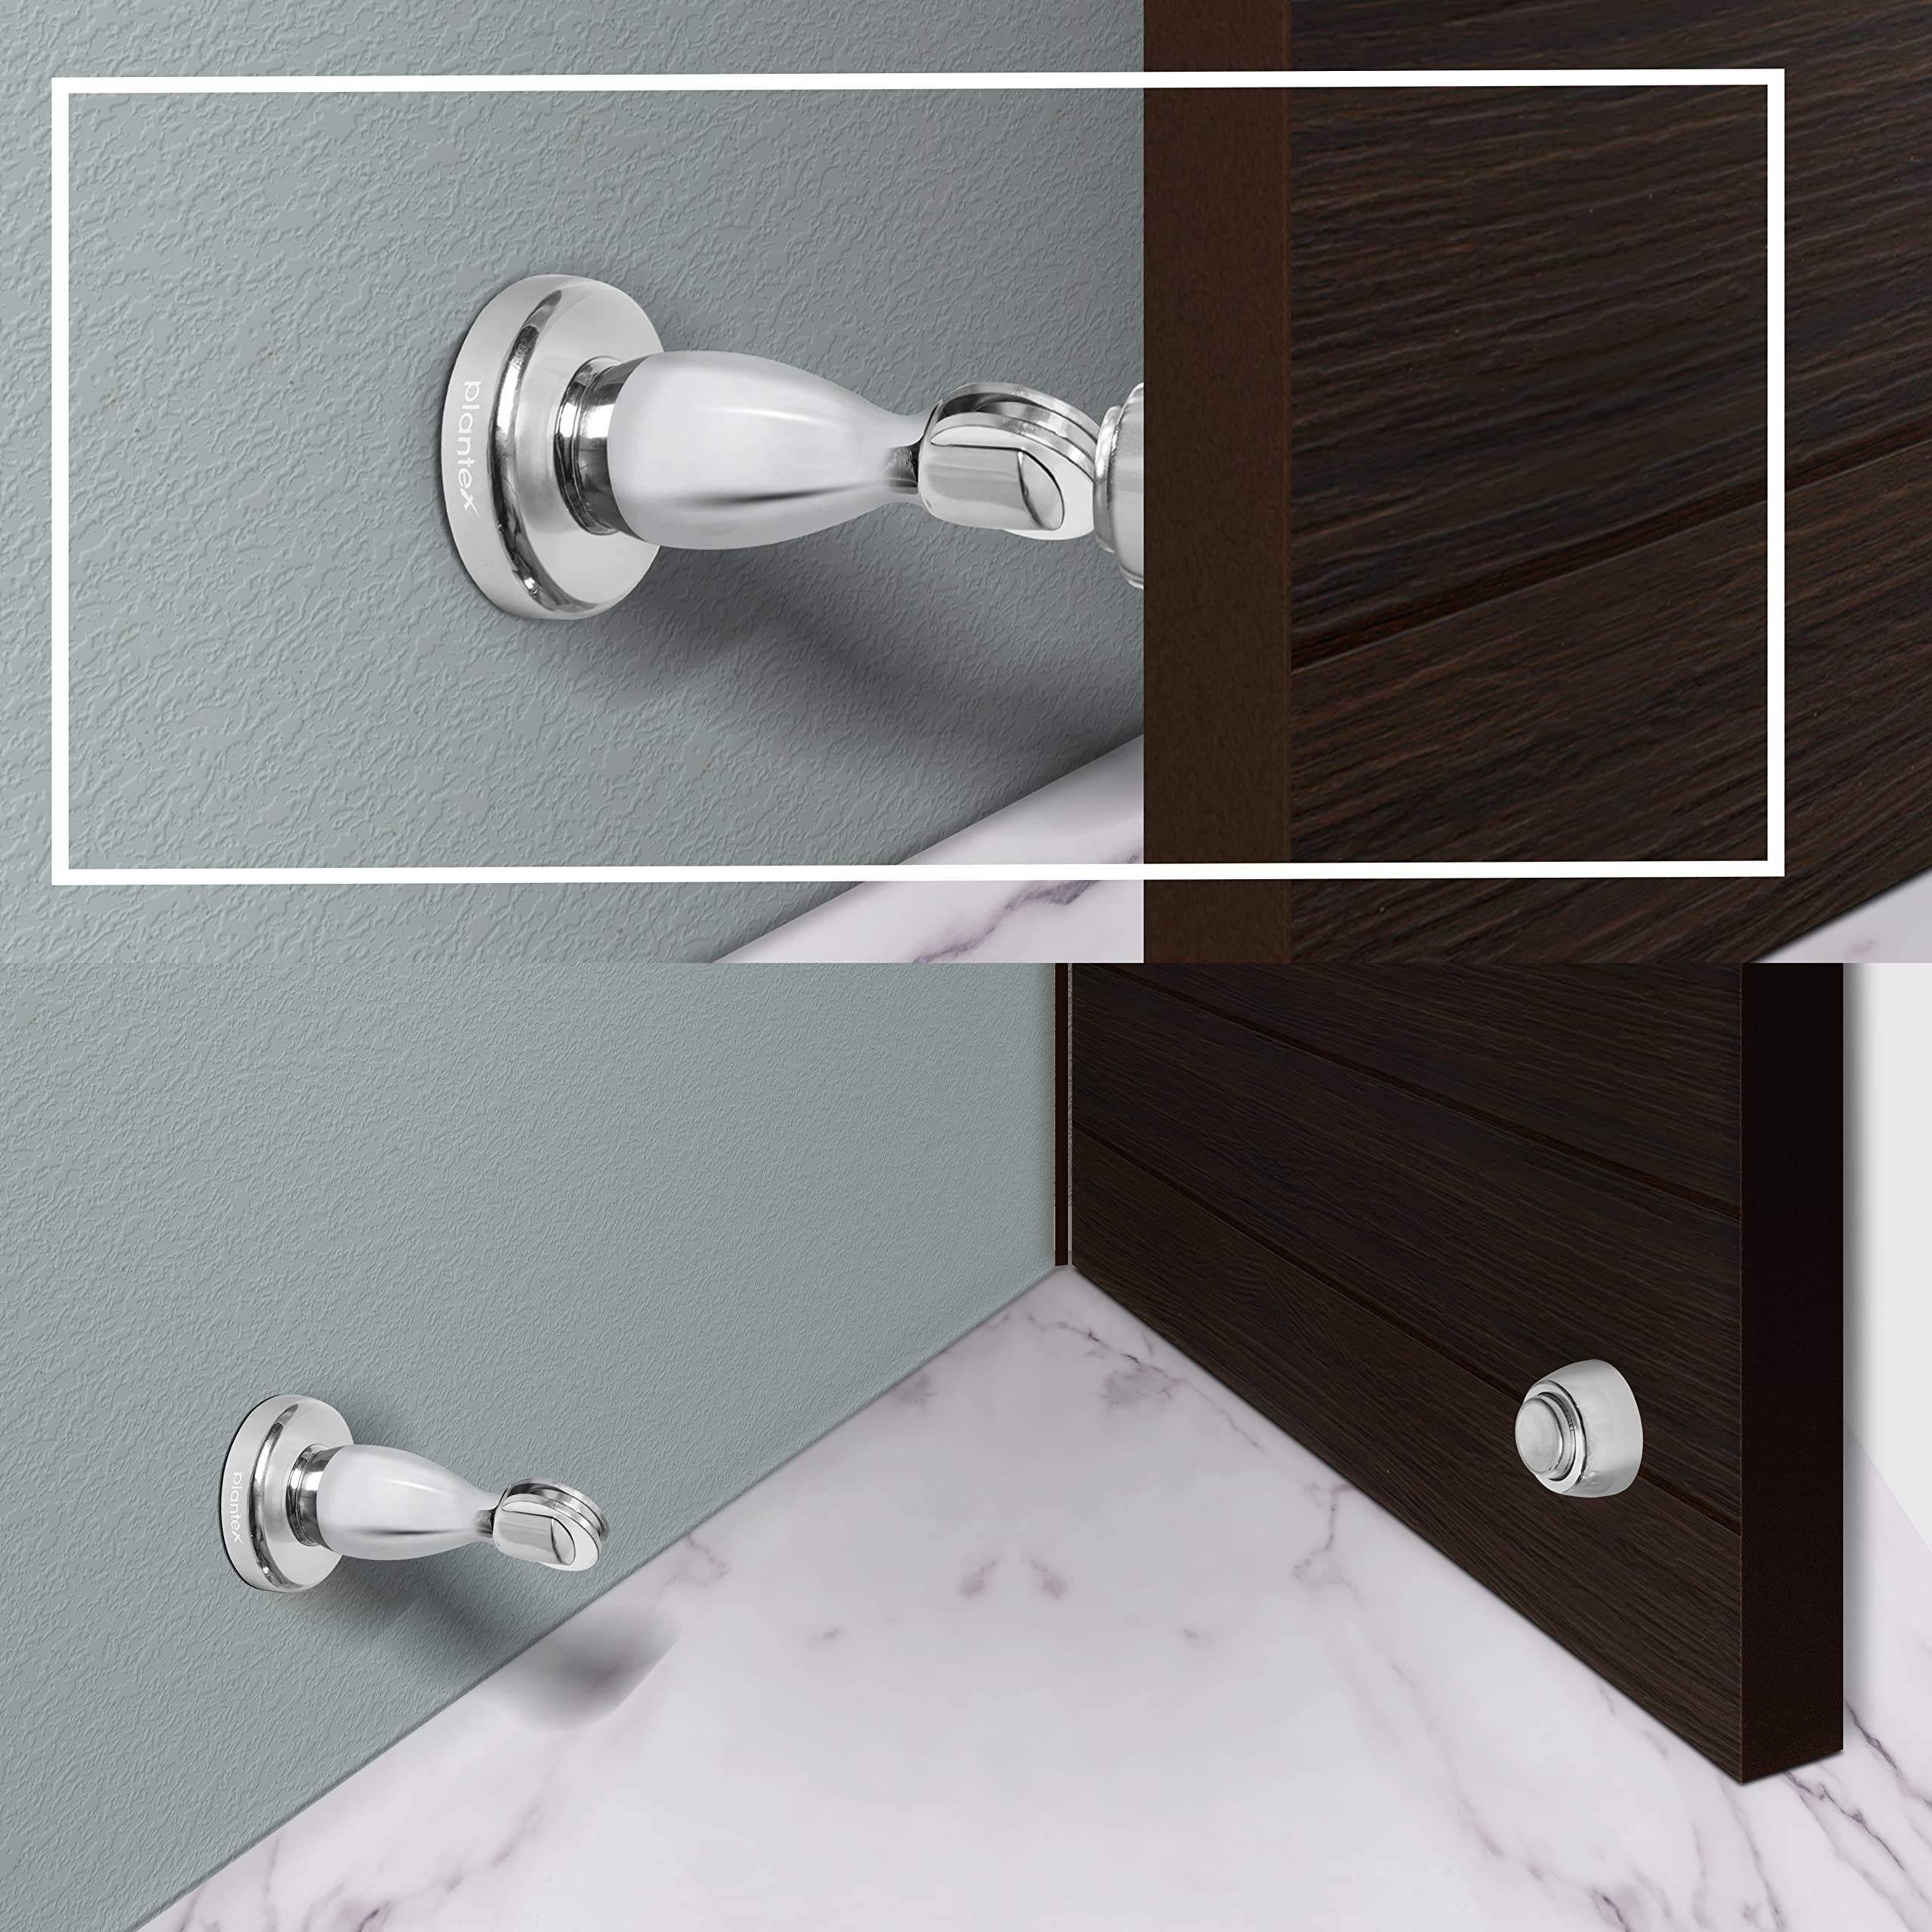 Plantex Magnetic Door Stopper for Home/ 360 Degree Magnet Door Catcher/Door Holder for Main Door/Bedroom/Office and Hotel Door - Pack of 10 (4 inch, Chrome)